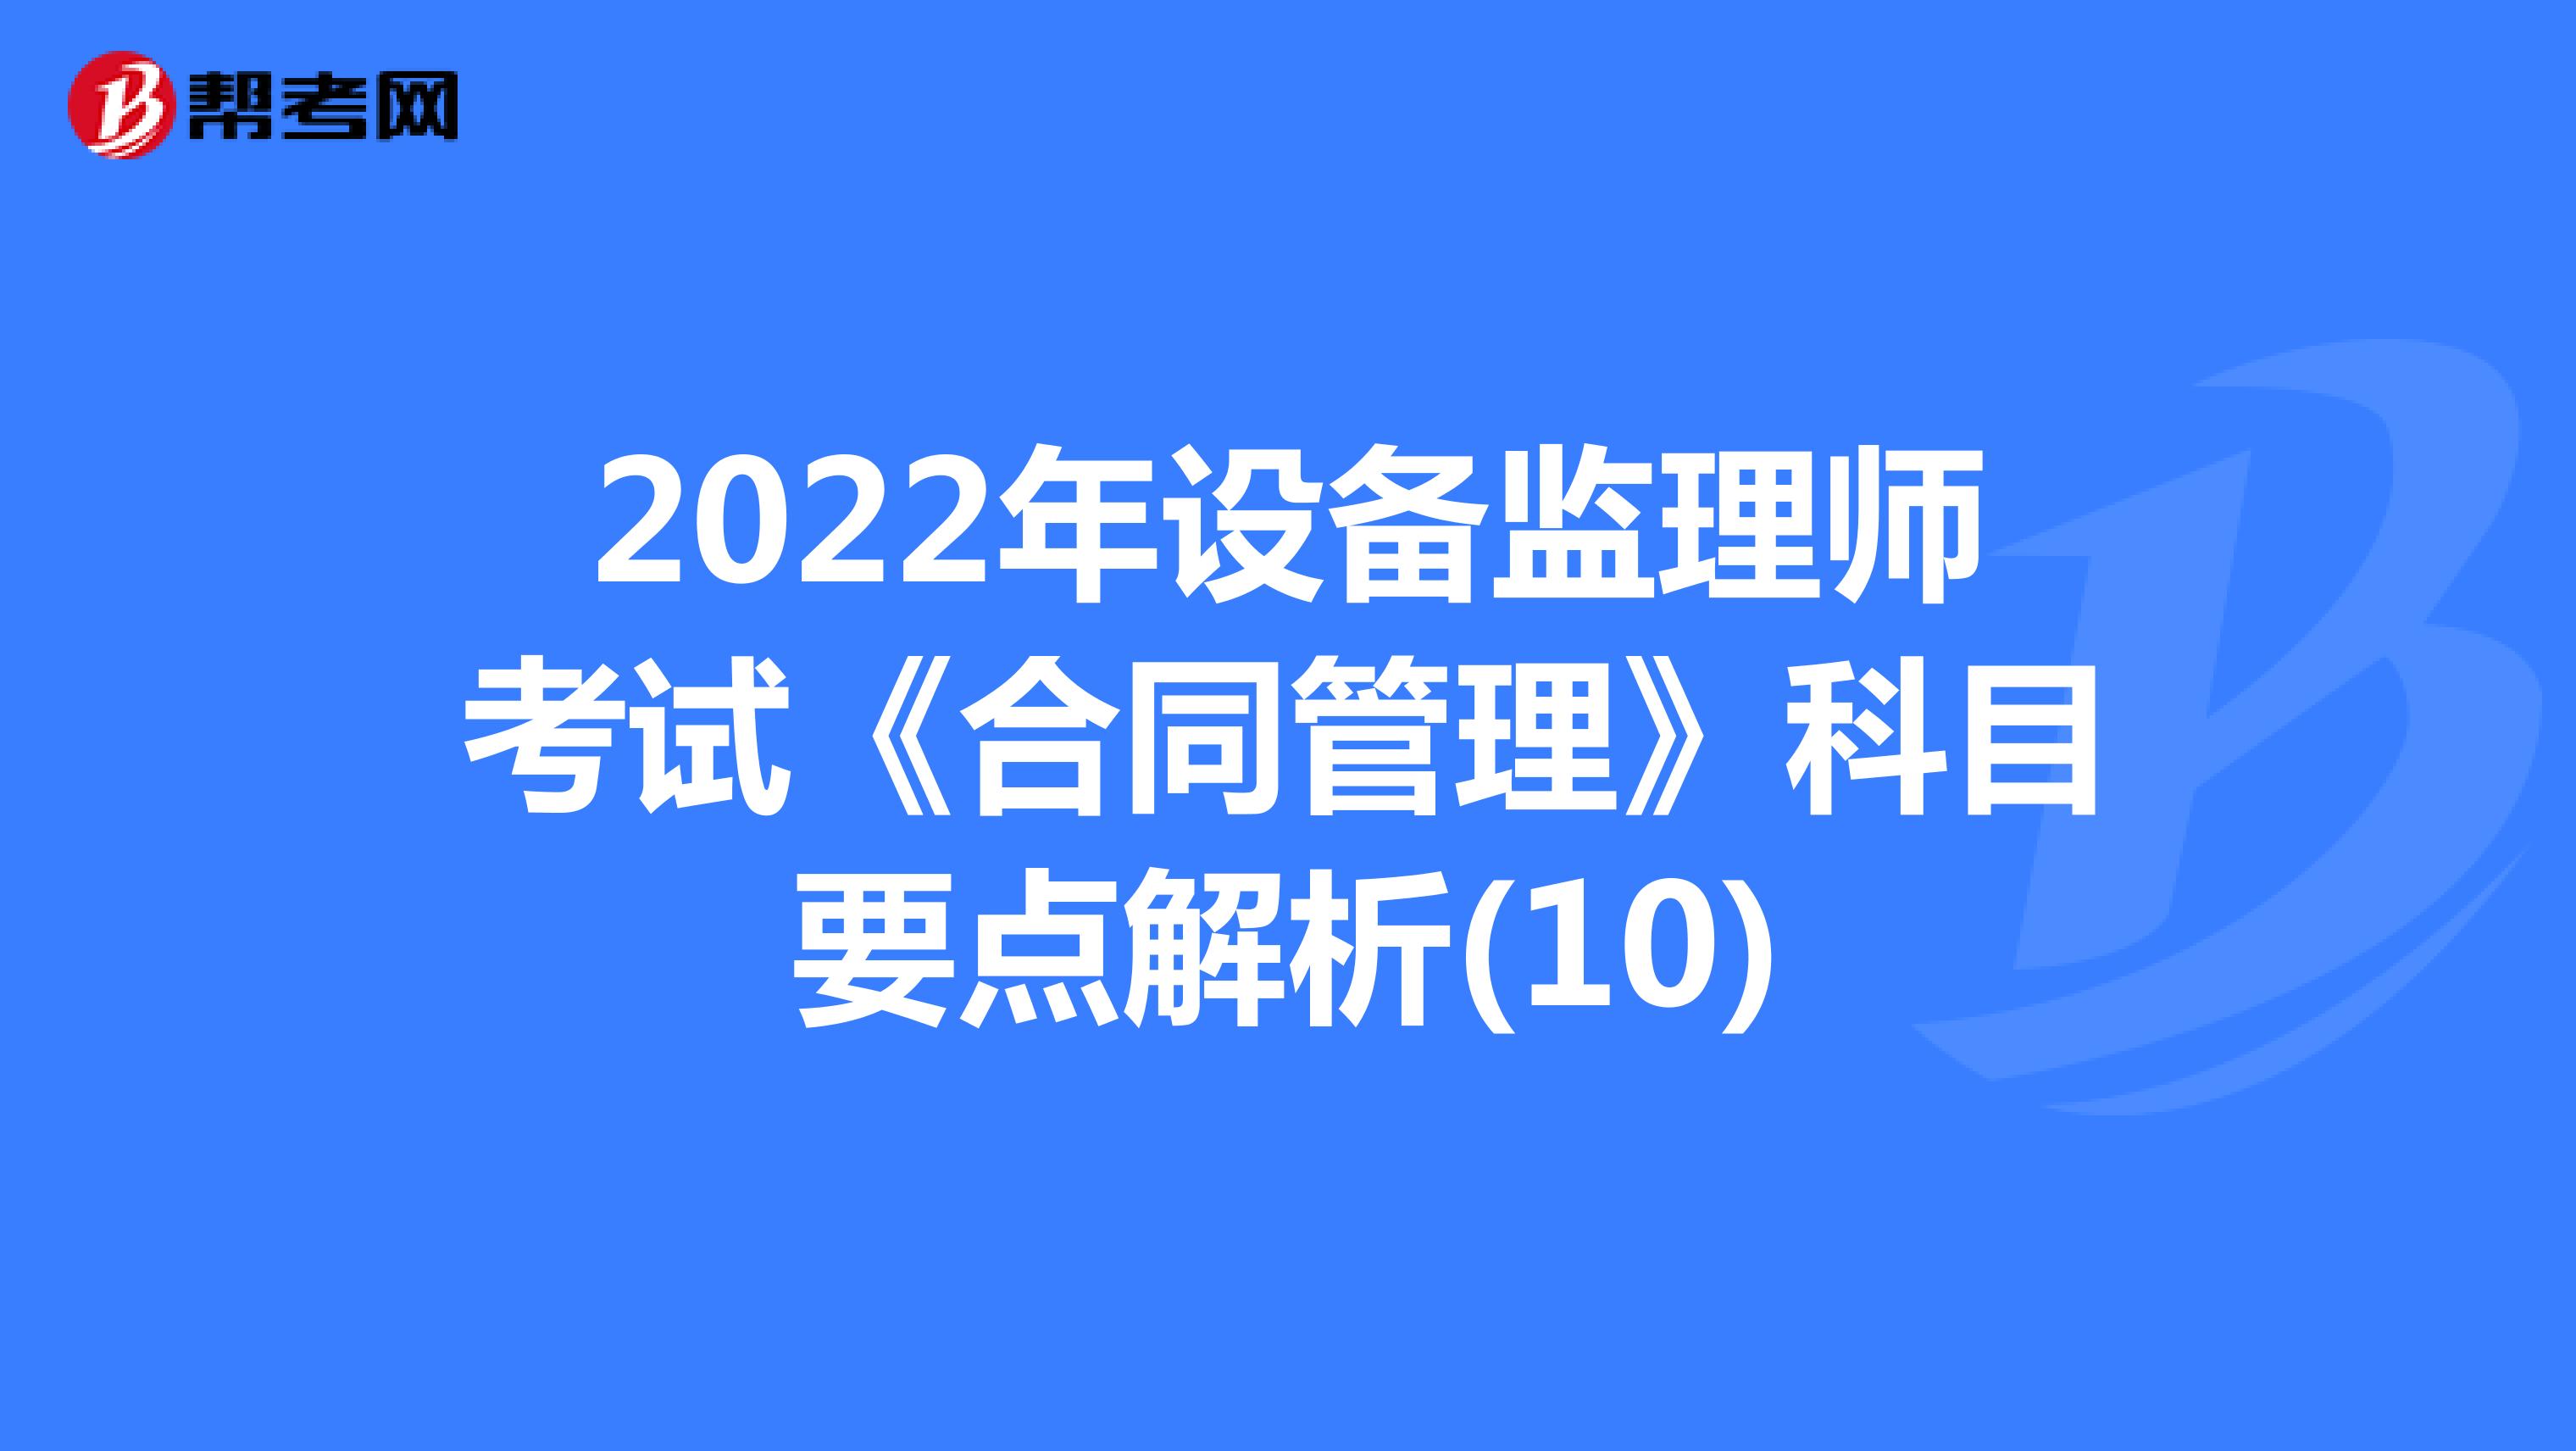 2022年设备监理师考试《合同管理》科目要点解析(10)